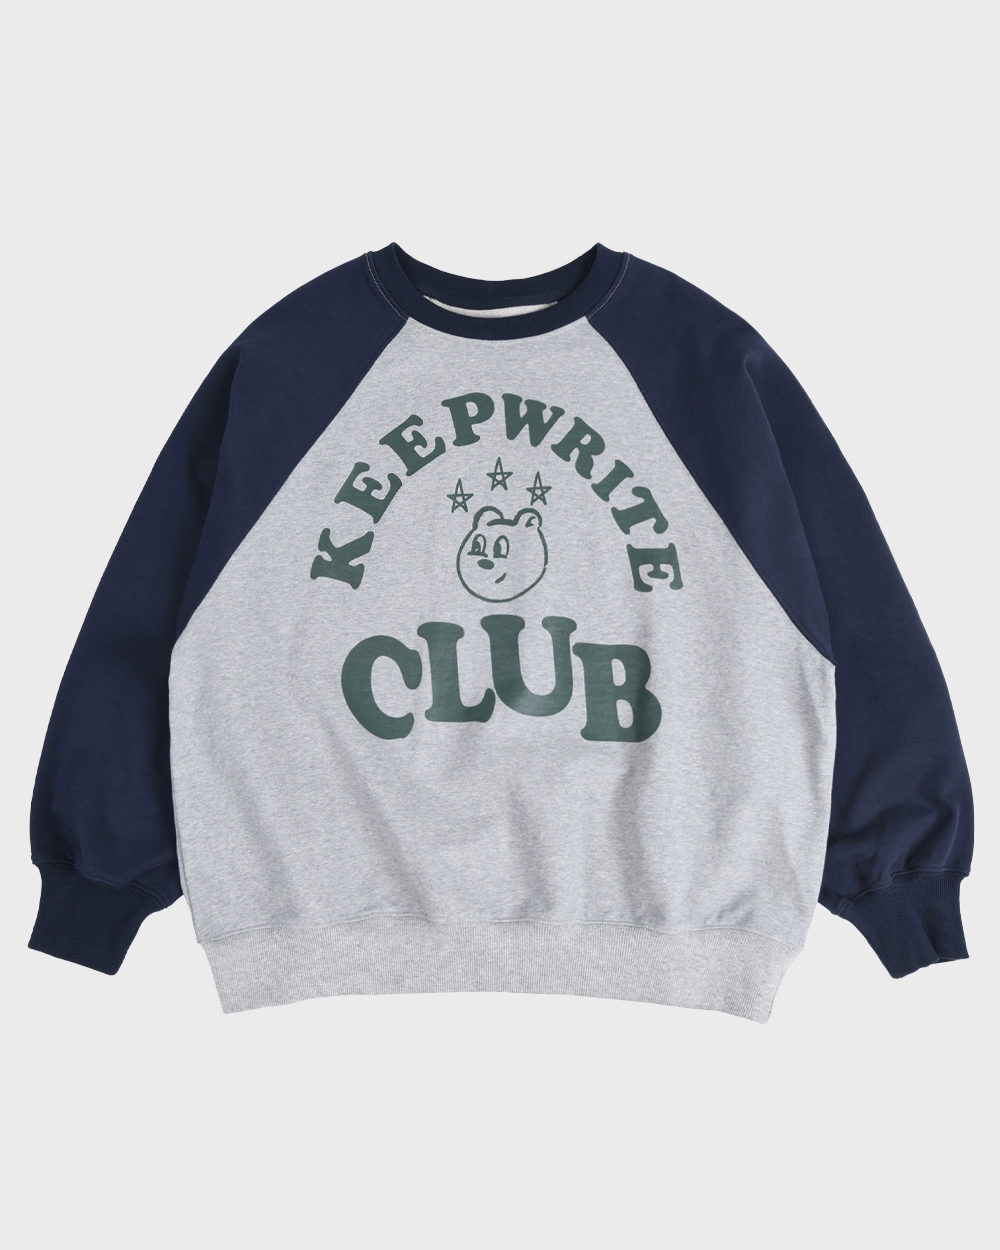 Keep Writing Club Raglan Sweatshirts (Navy)